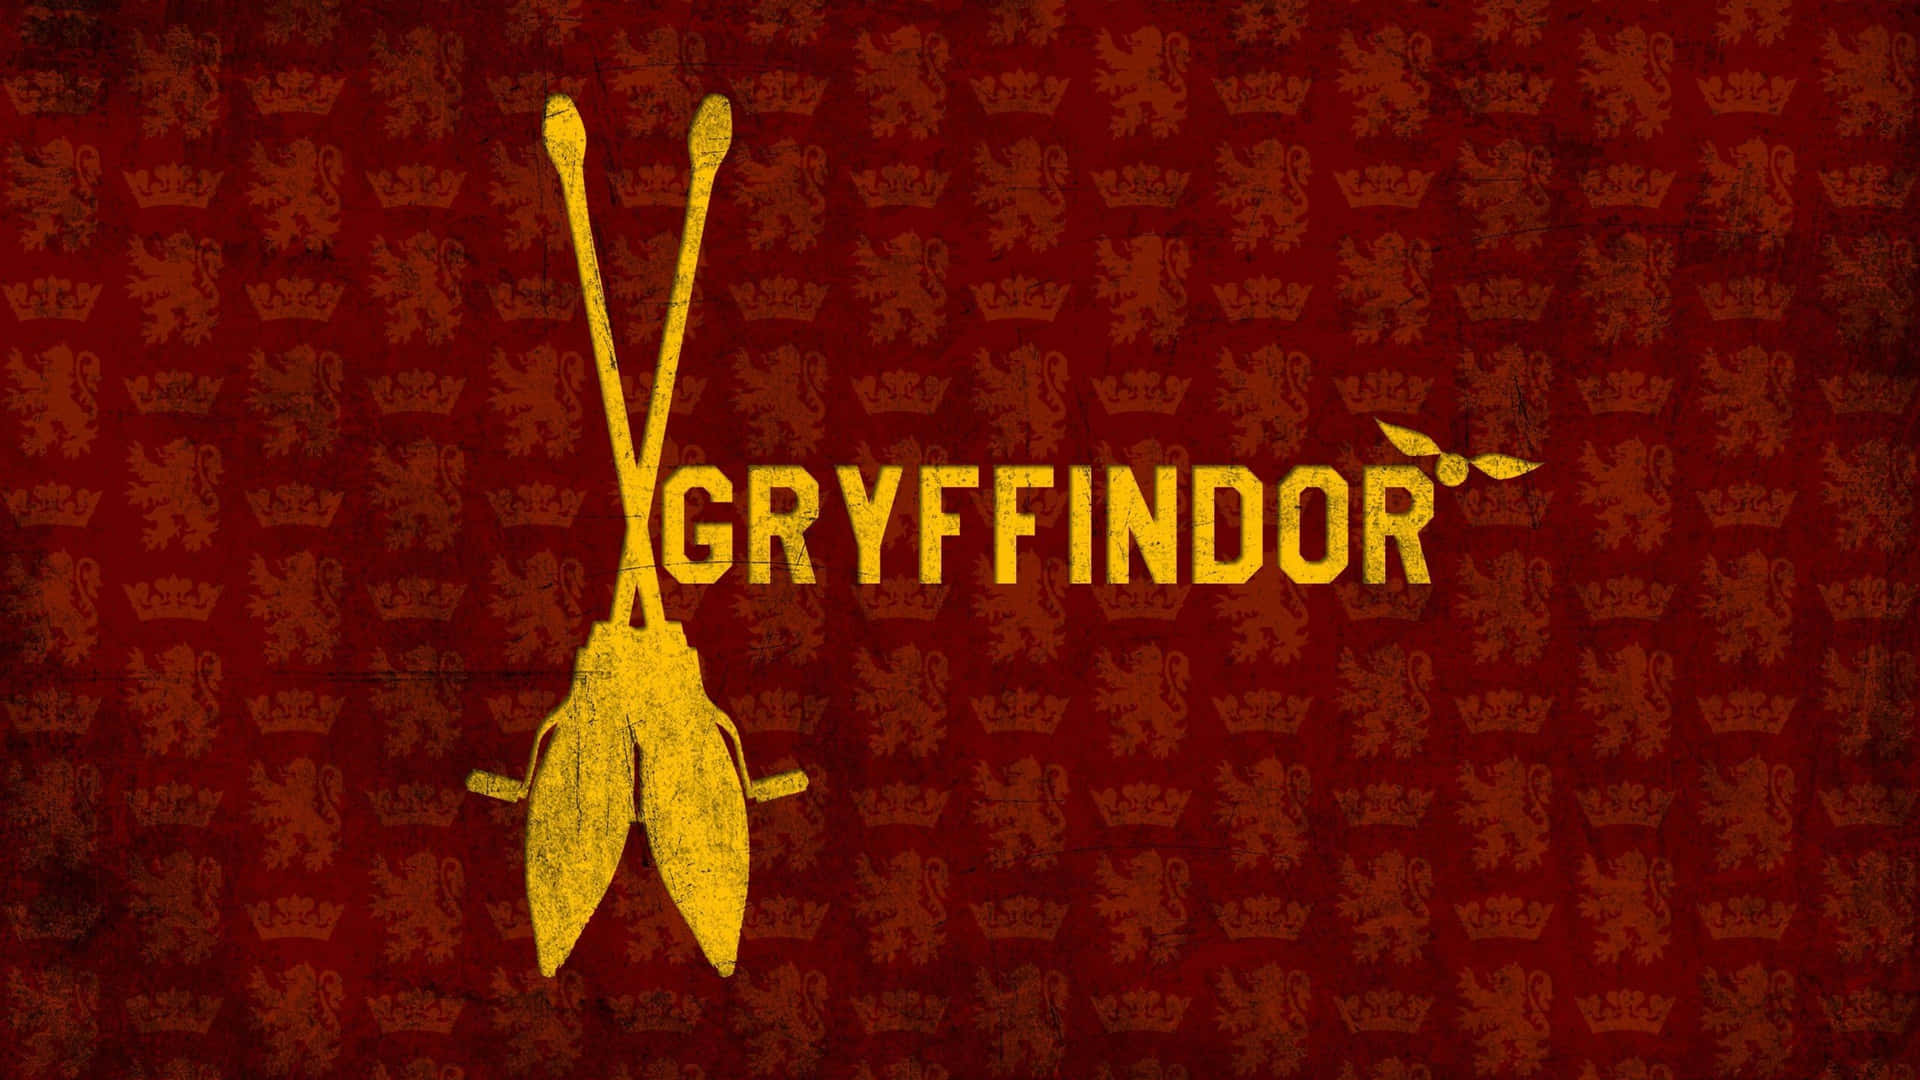 Dedicadoa Los Valientes Y Valerosos Miembros De Gryffindor